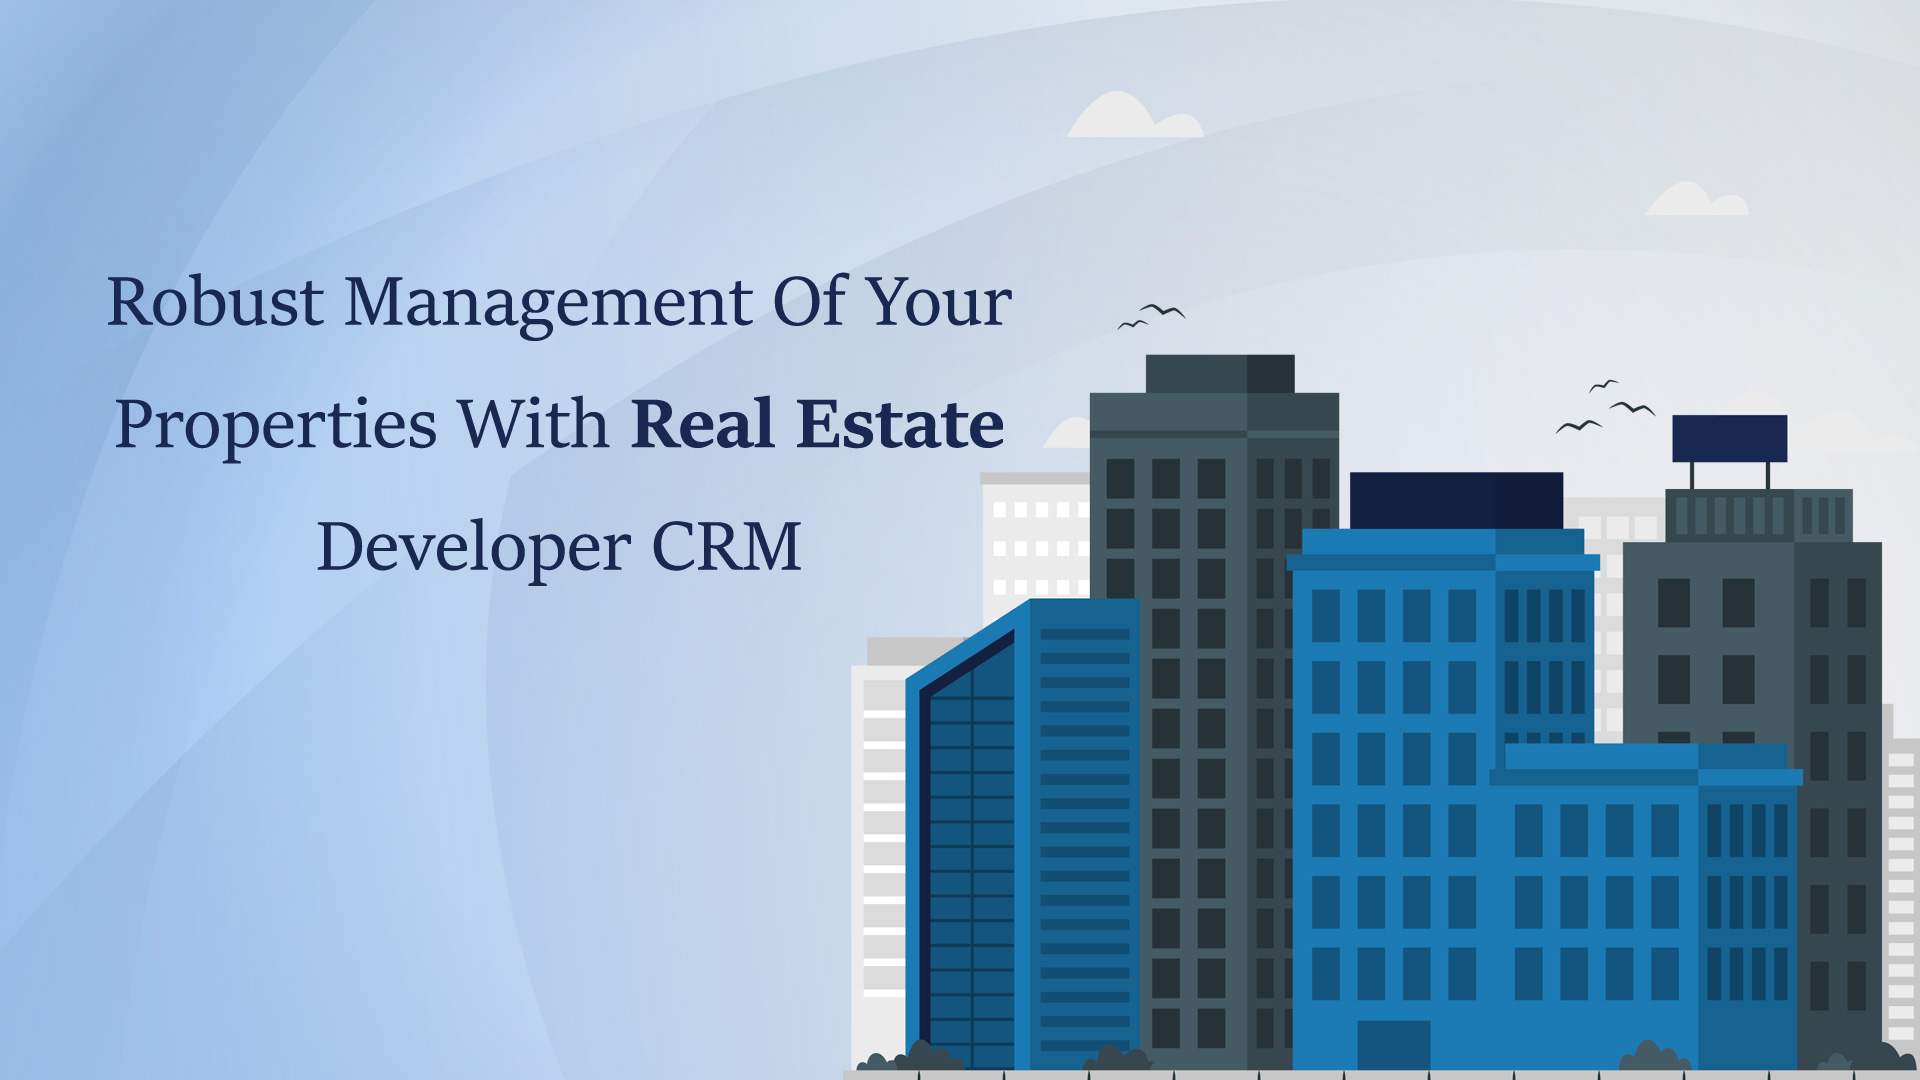 Real Estate Developer CRM